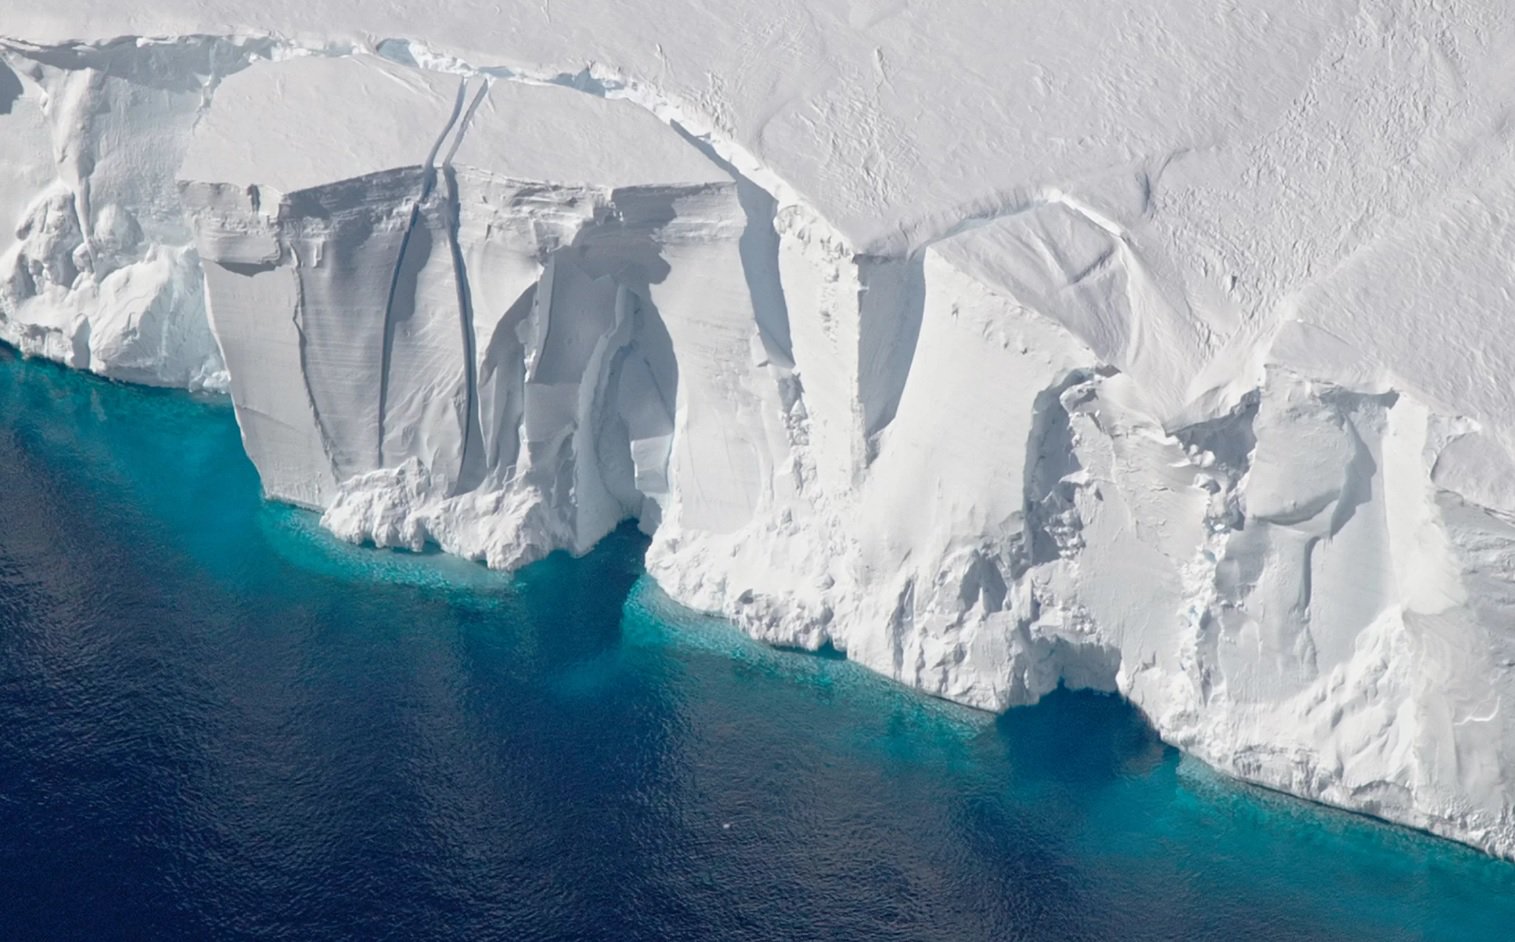 भंडार के अंटार्कटिका में बर्फ पिछले 25 वर्षों में काफी गिरावट आई है